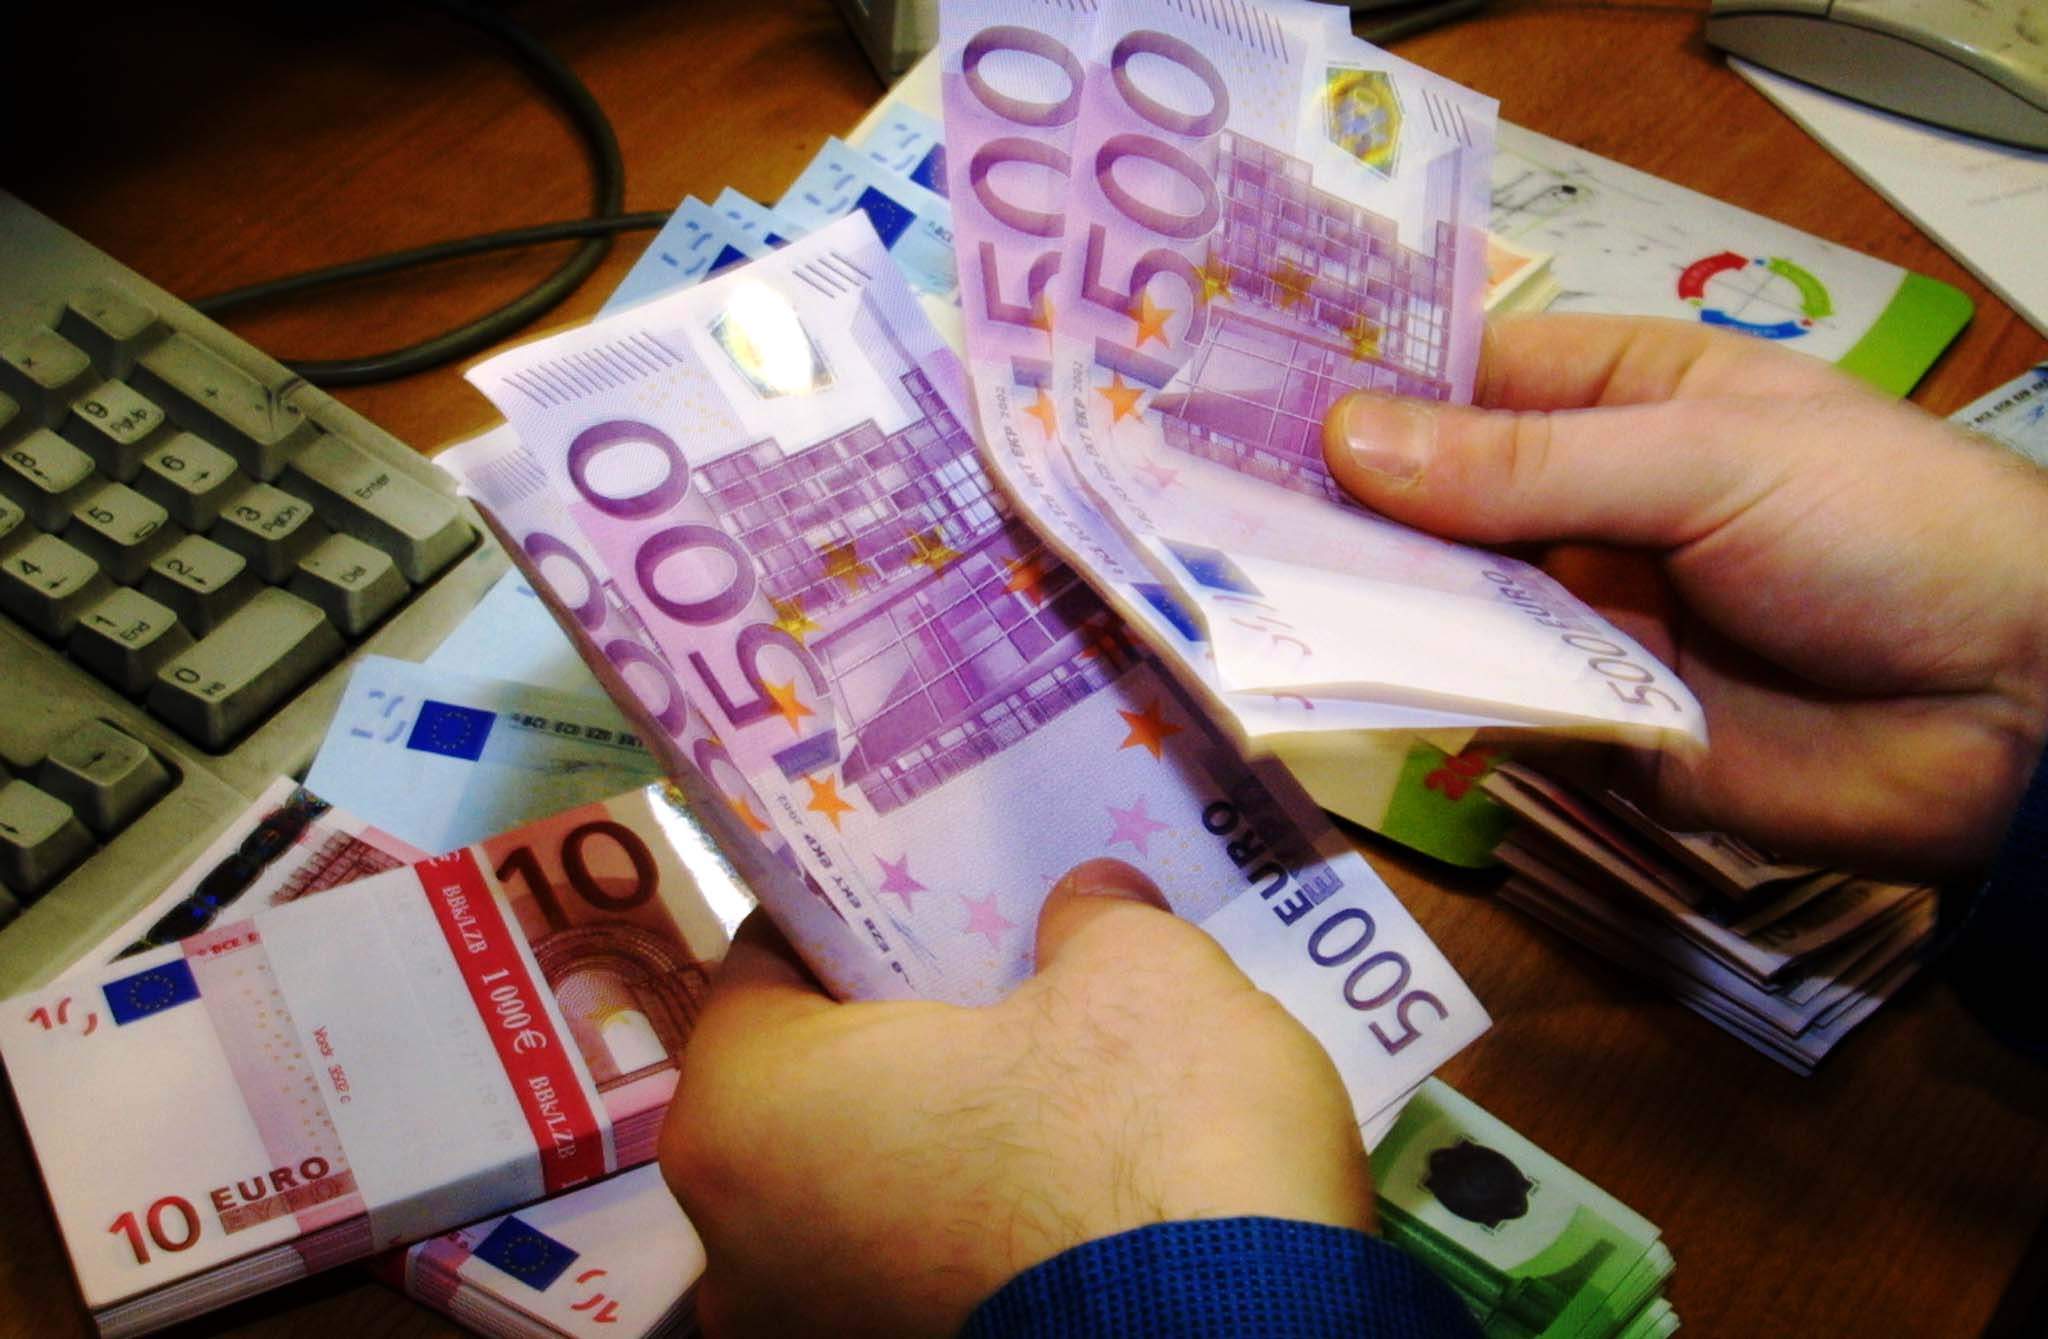 <b>Der Spiegel</b> 600 δισ. ευρώ oι ελληνικές καταθέσεις στην Ελβετία – Διαψεύδει το ύψος του ποσού το υπουργείο Οικονομικών